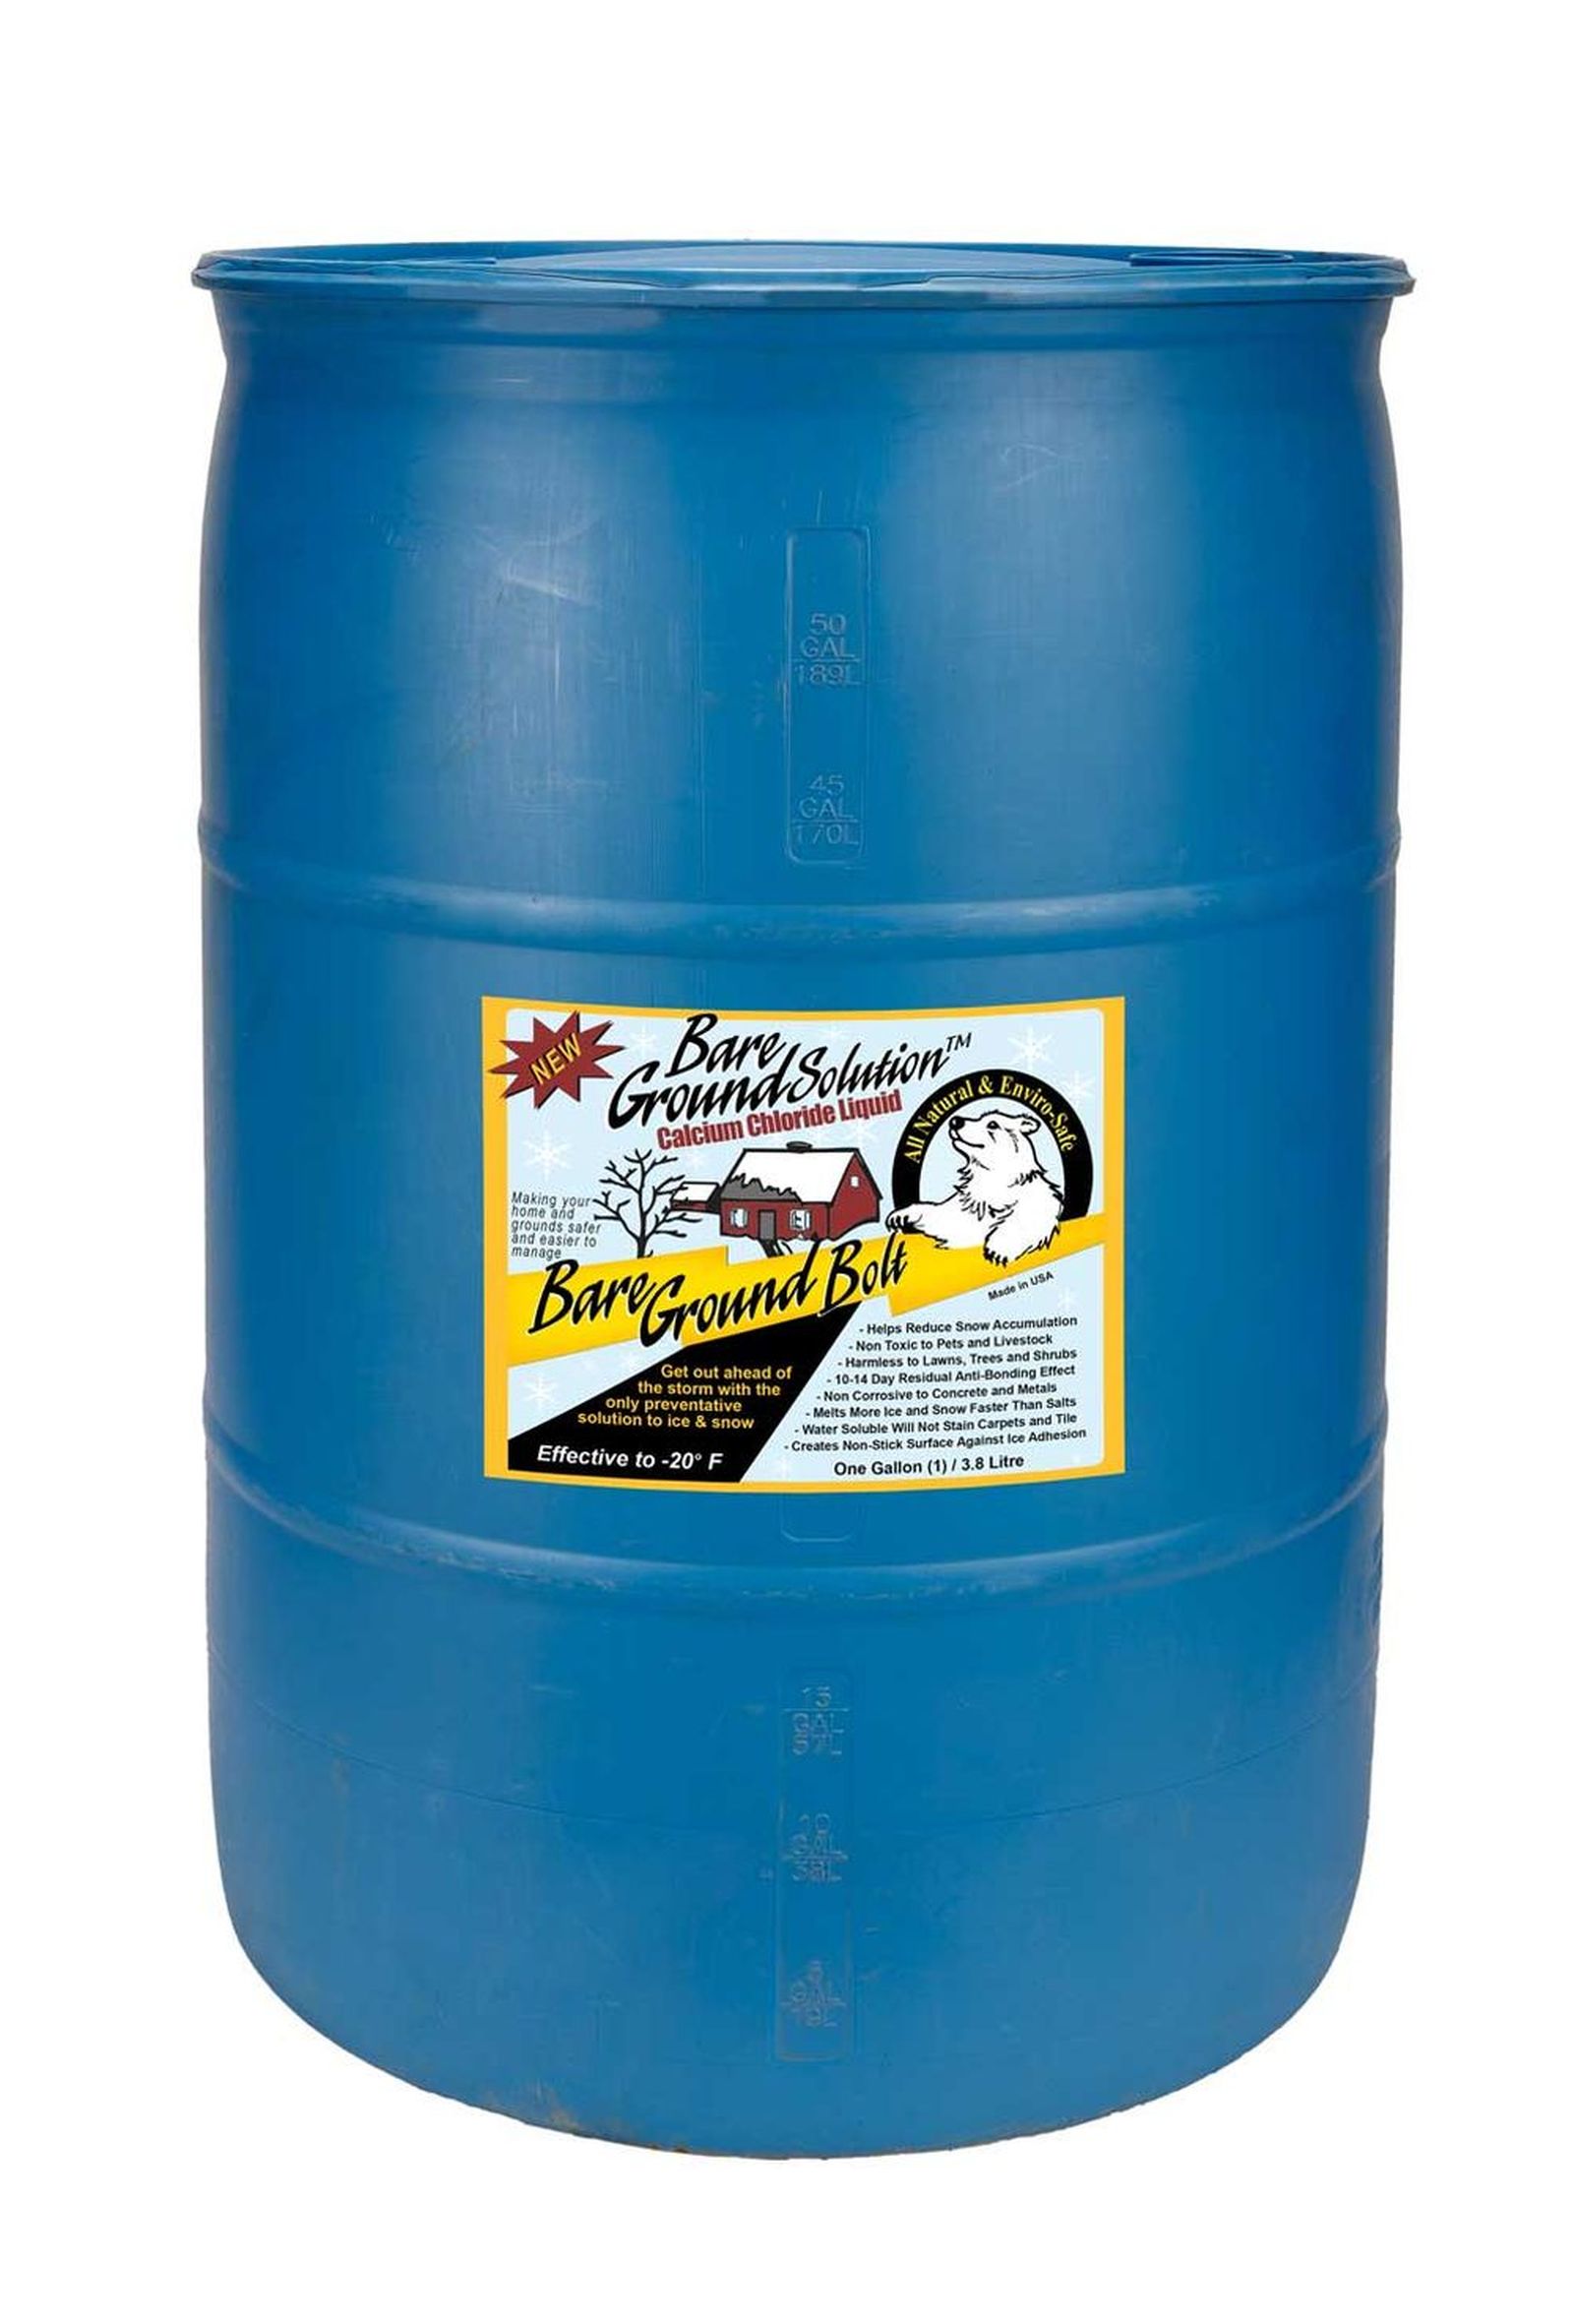 Bare Ground BGB-30DC 30 Gallon Drum Calcium Chloride Liquid